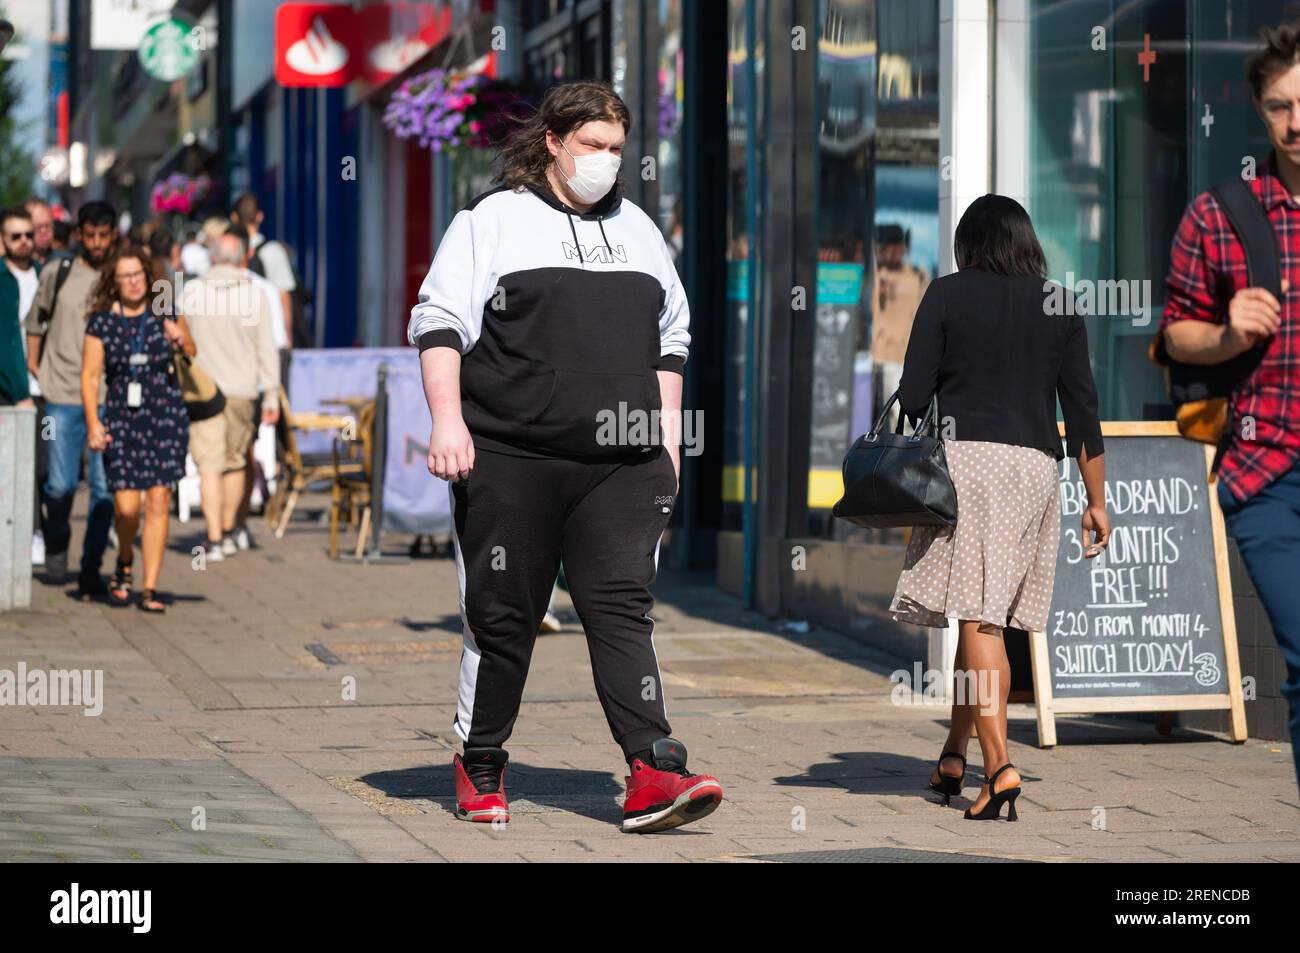 Homme en surpoids marchant dans une rue commerçante urbaine animée en été, Royaume-Uni, portant un masque facial. Banque D'Images